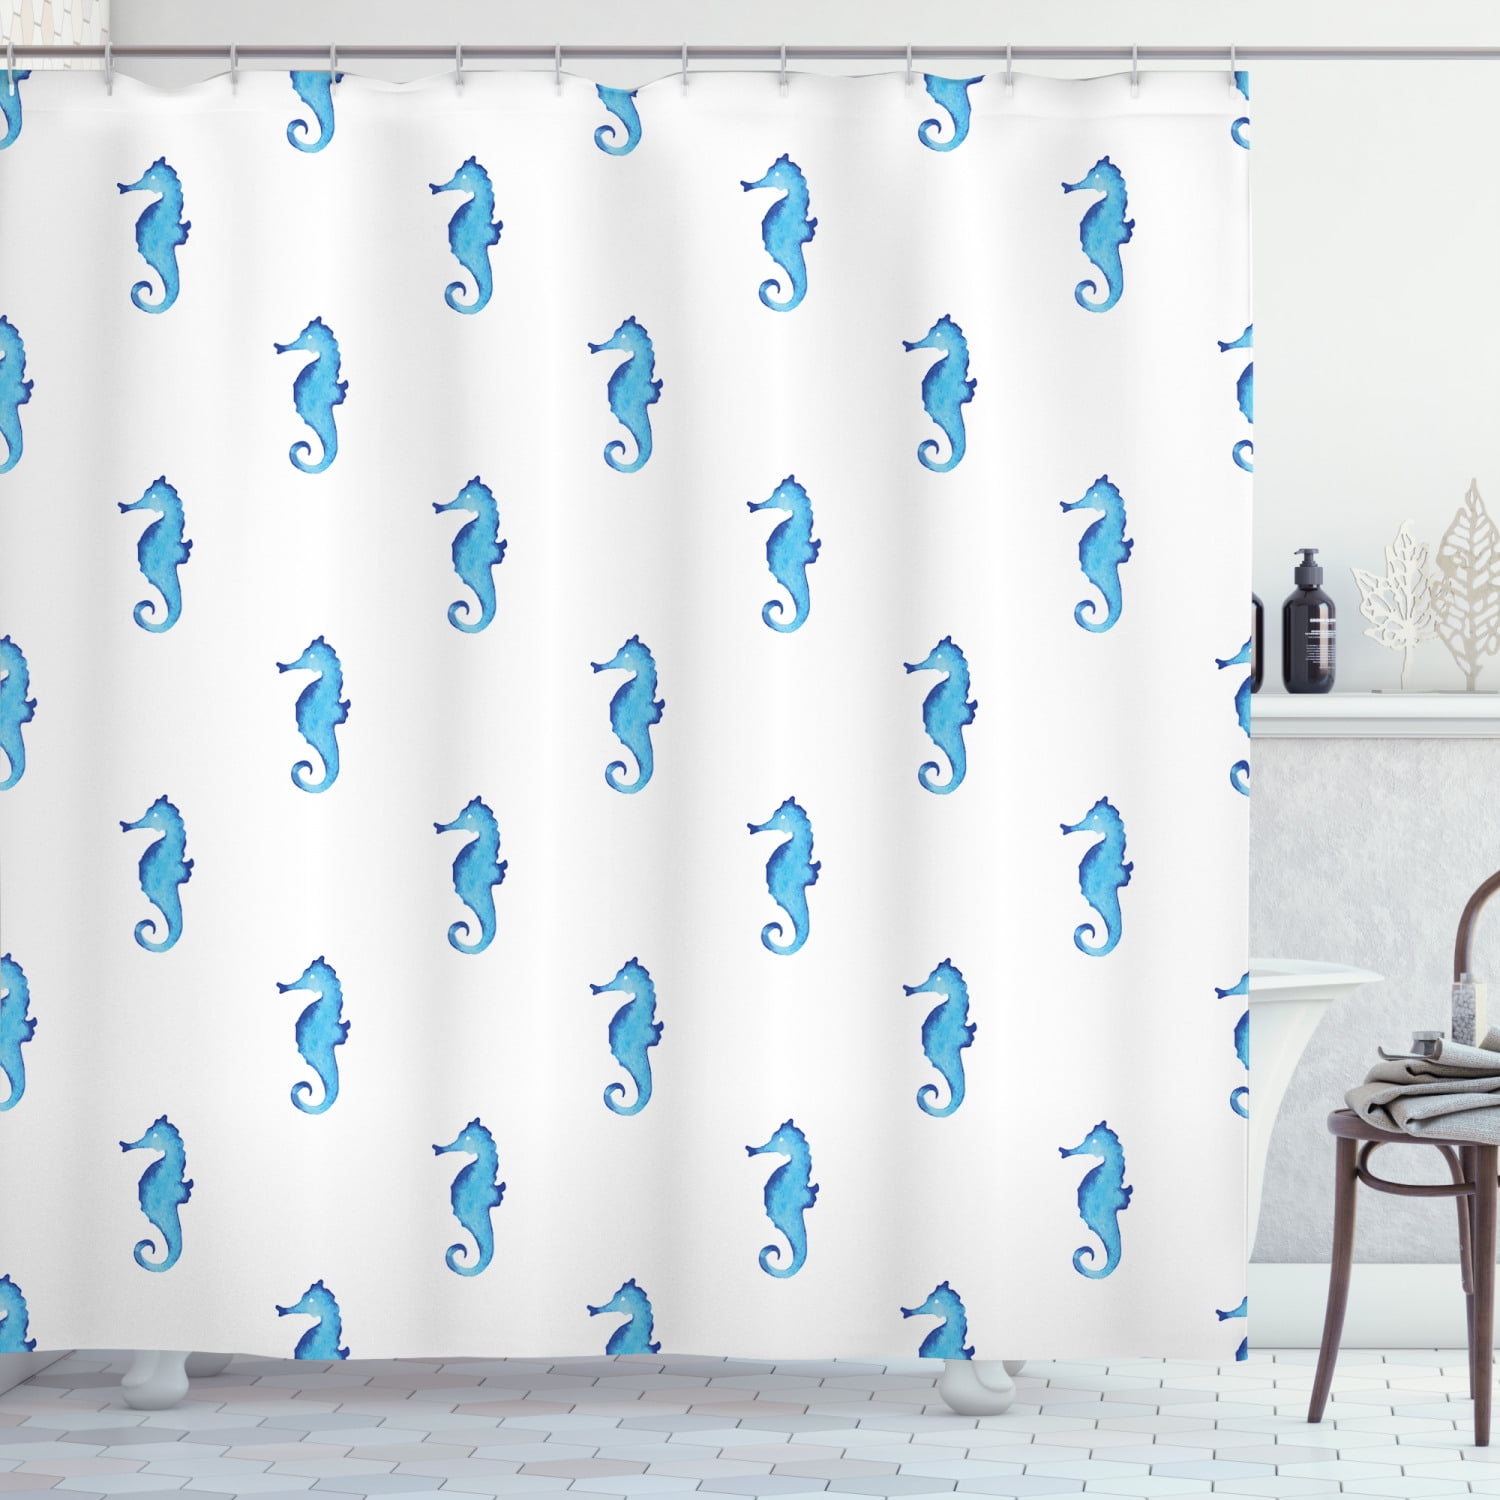 Donkey Pattern Shower Curtain Fabric Decor Set with Hooks 4 Sizes Ambesonne 